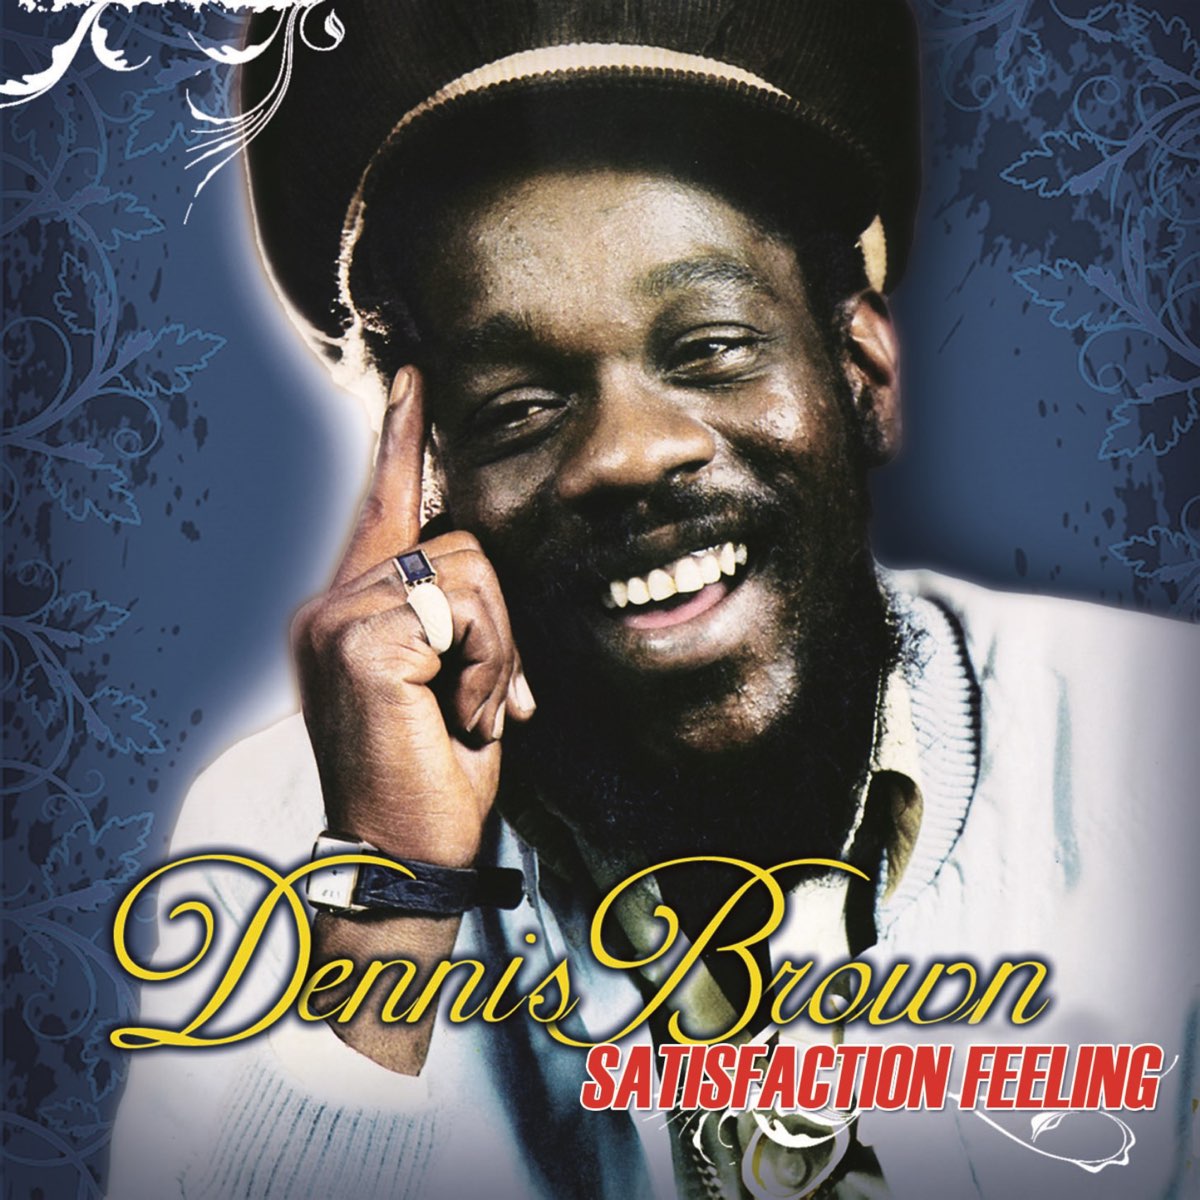 Feeling of satisfaction. Dennis Brown - satisfaction feeling. Dennis Brown - satisfaction feeling (1984). Dennis Brown - Revolution (1985). Satisfying feeling.